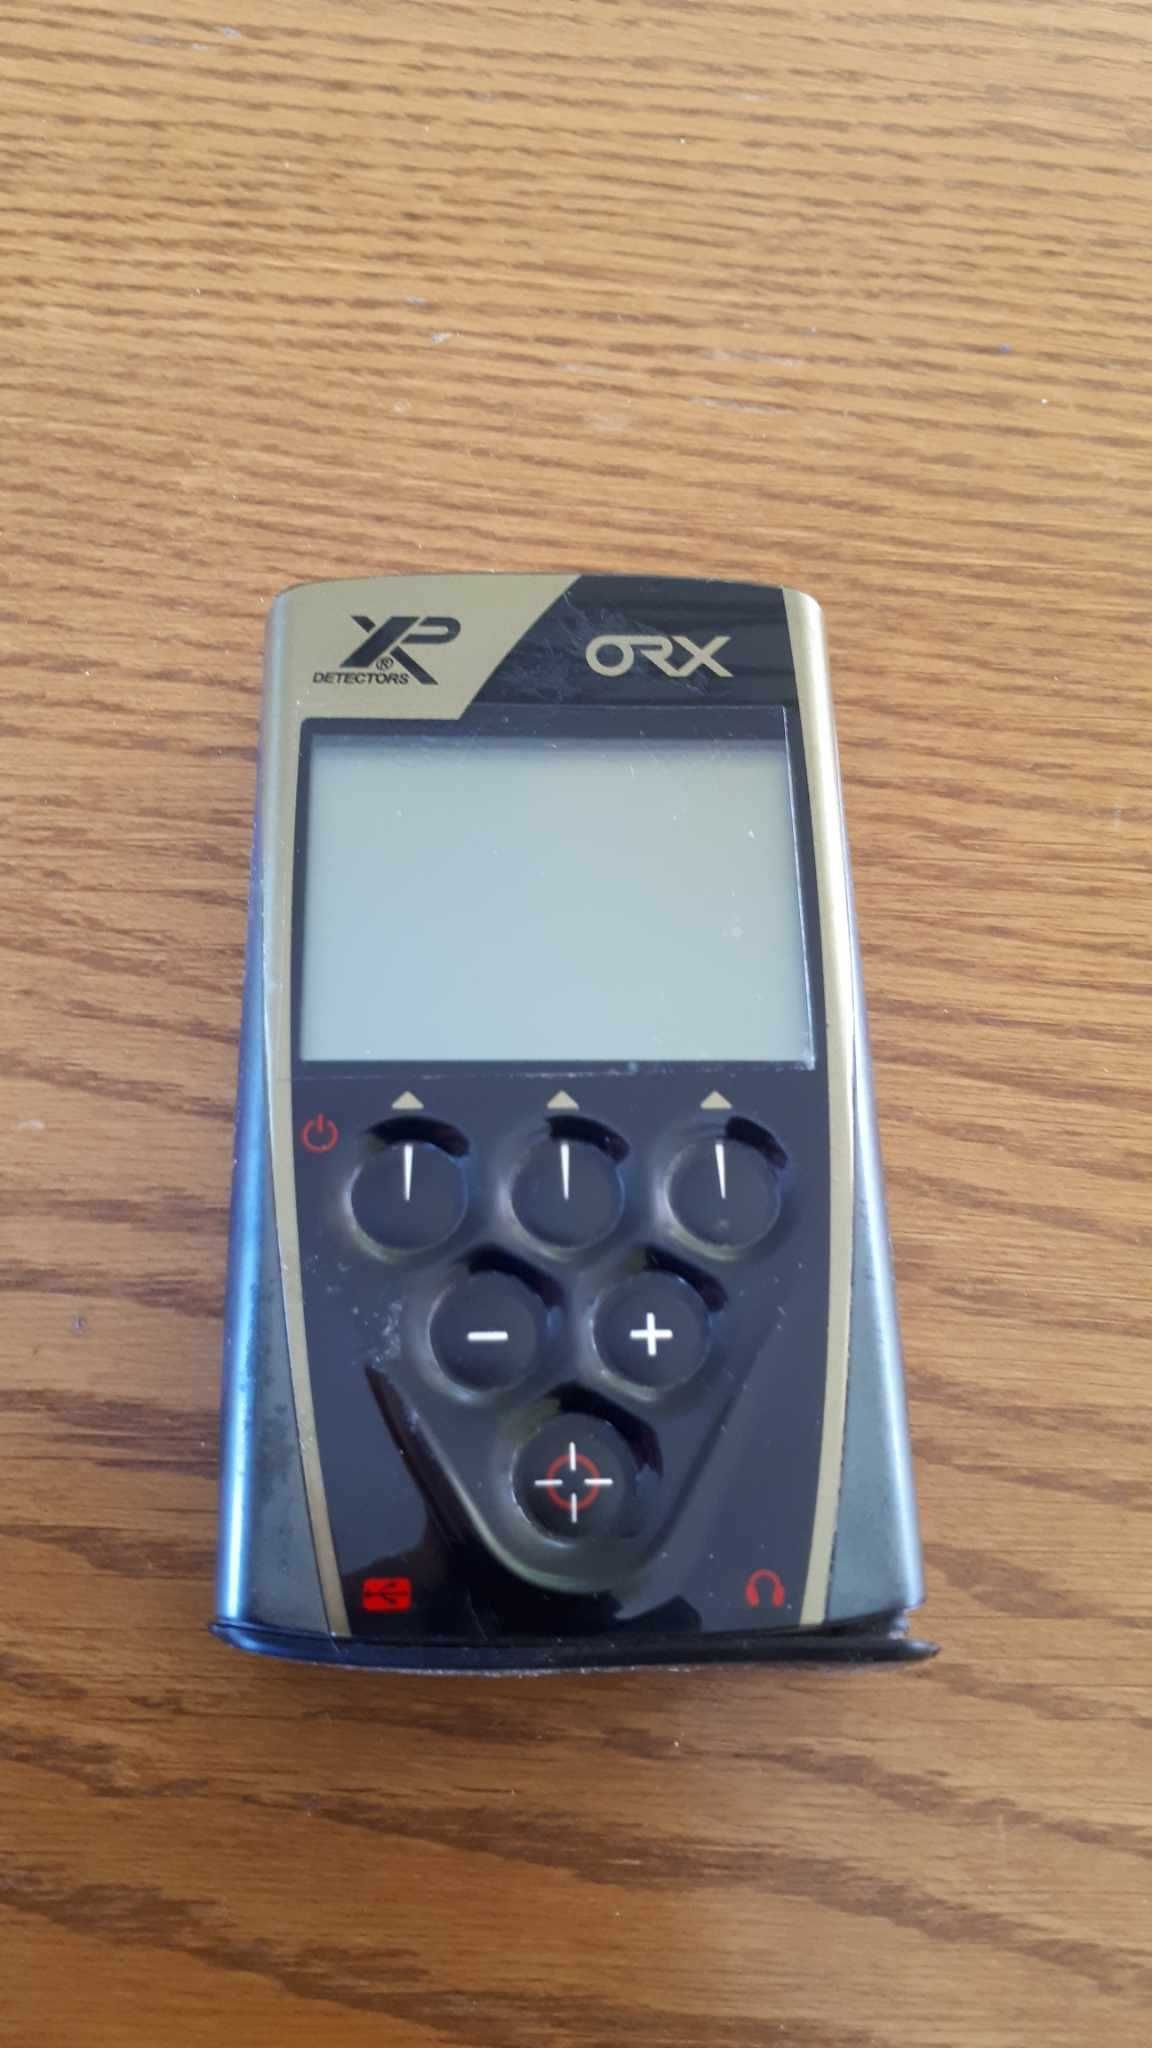 XP ORX - panel sterujący wykrywacza metali